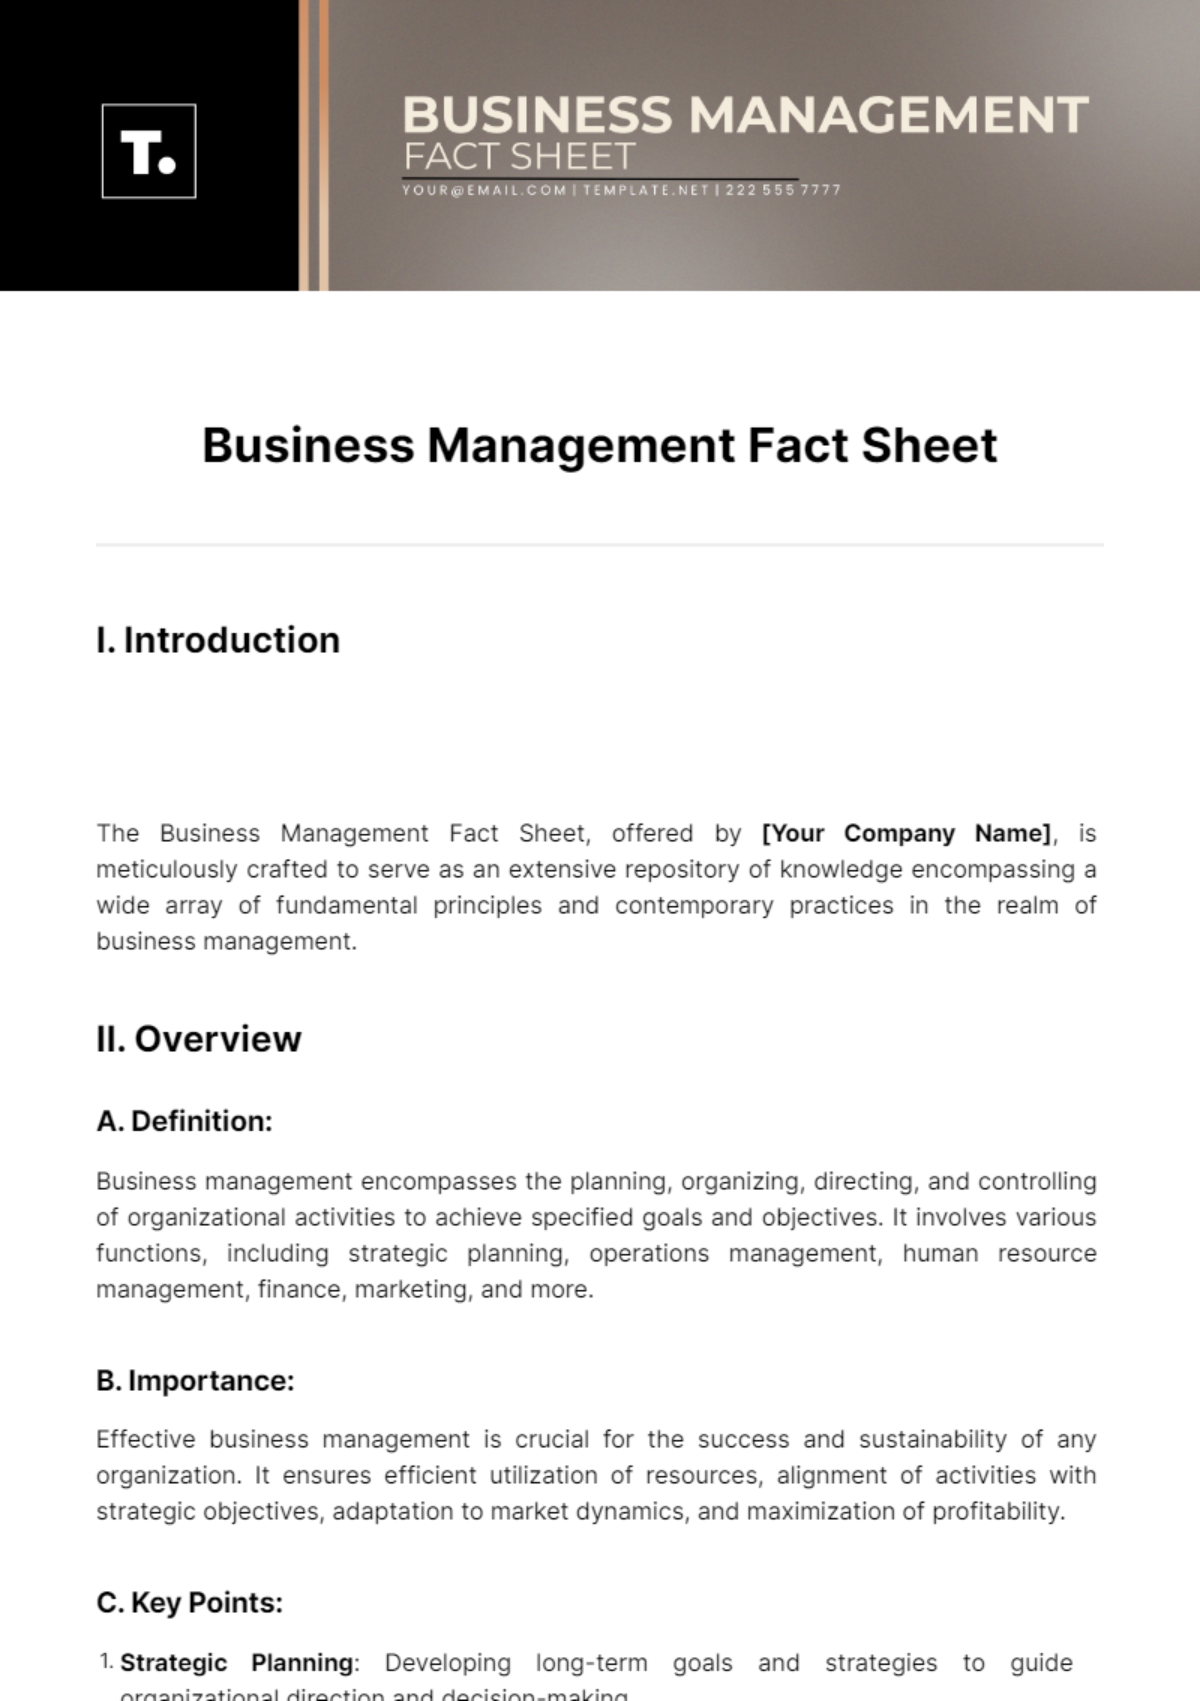 Free Business Management Fact Sheet Template